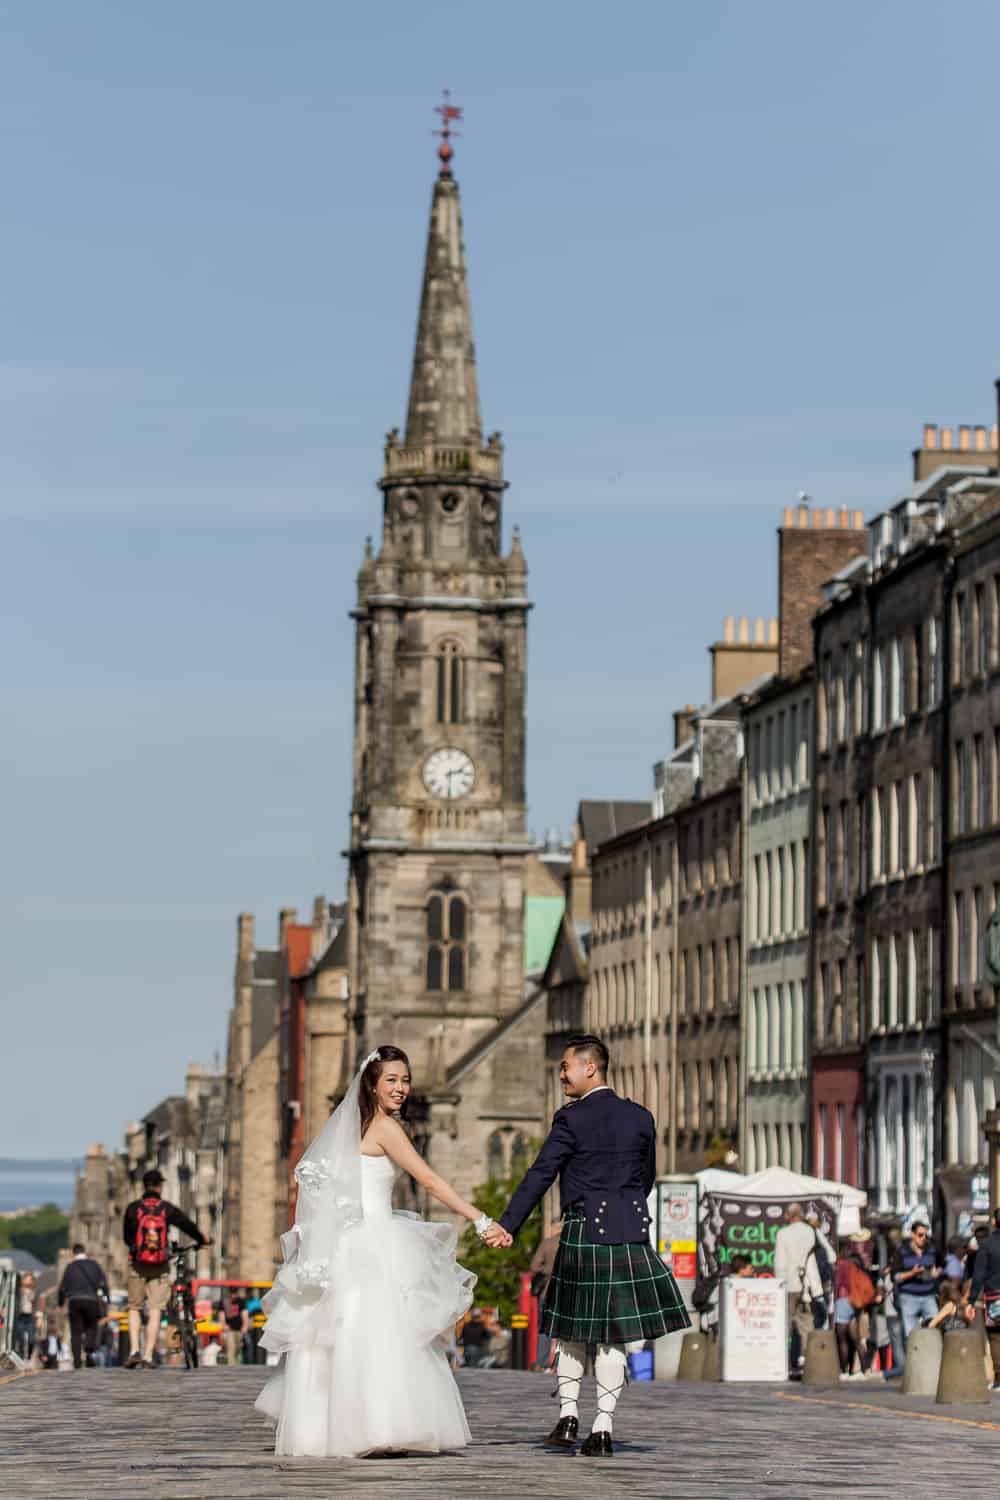 Top romantic places to propose in Edinburgh. 36